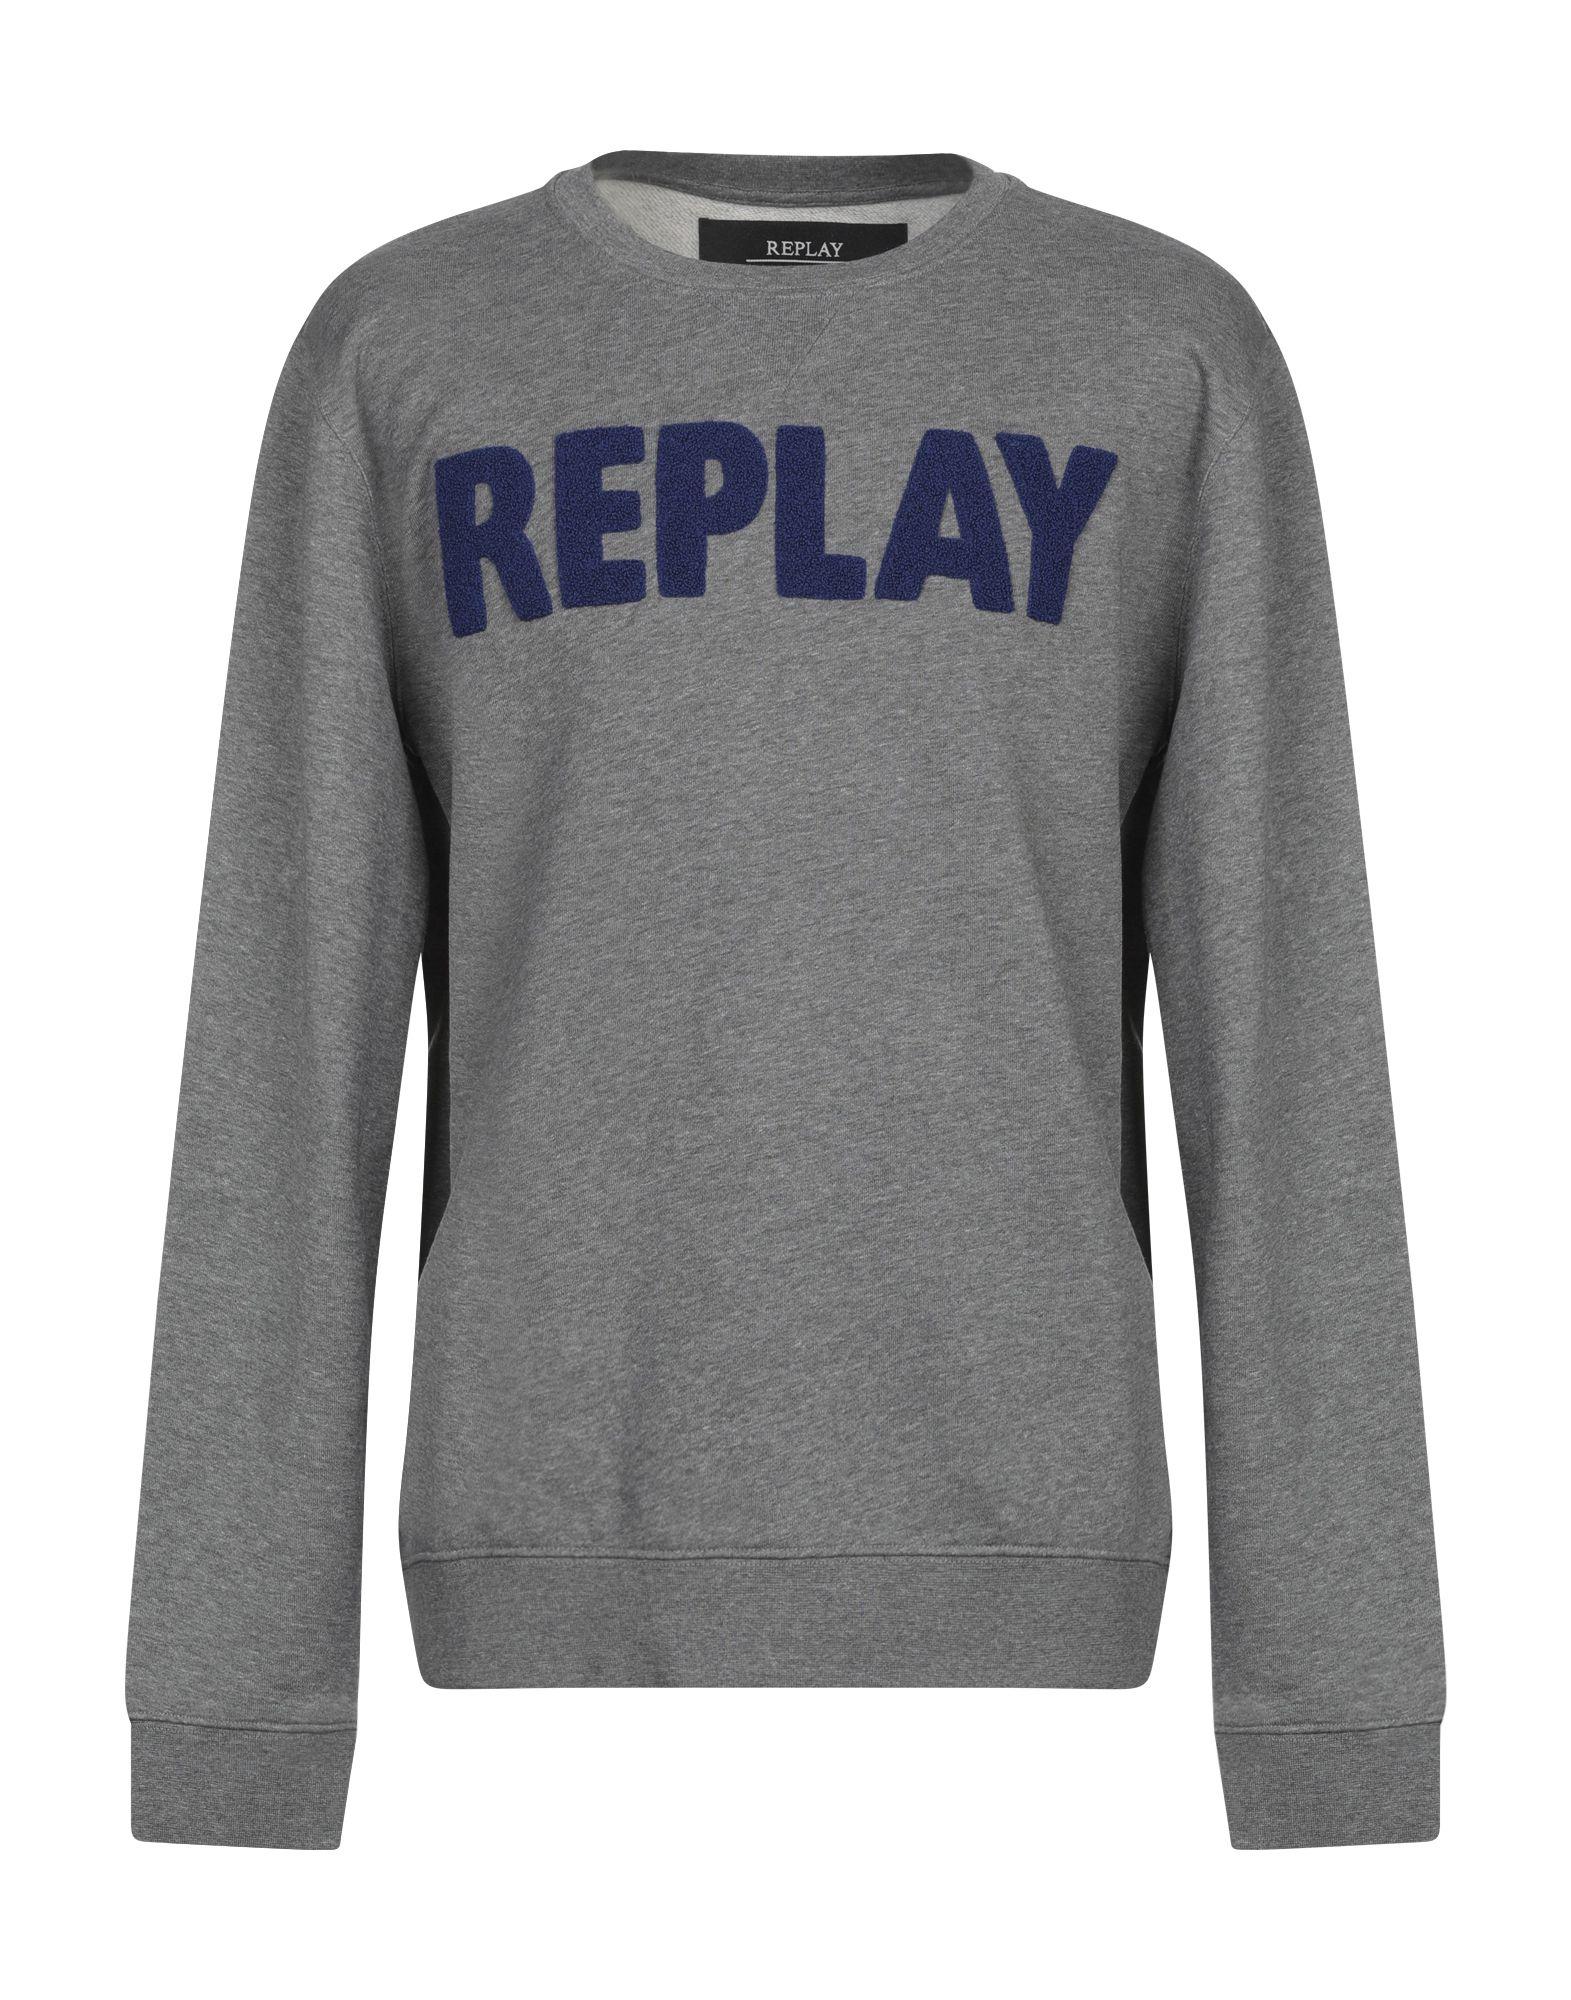 Replay Sweatshirt in Gray for Men - Lyst